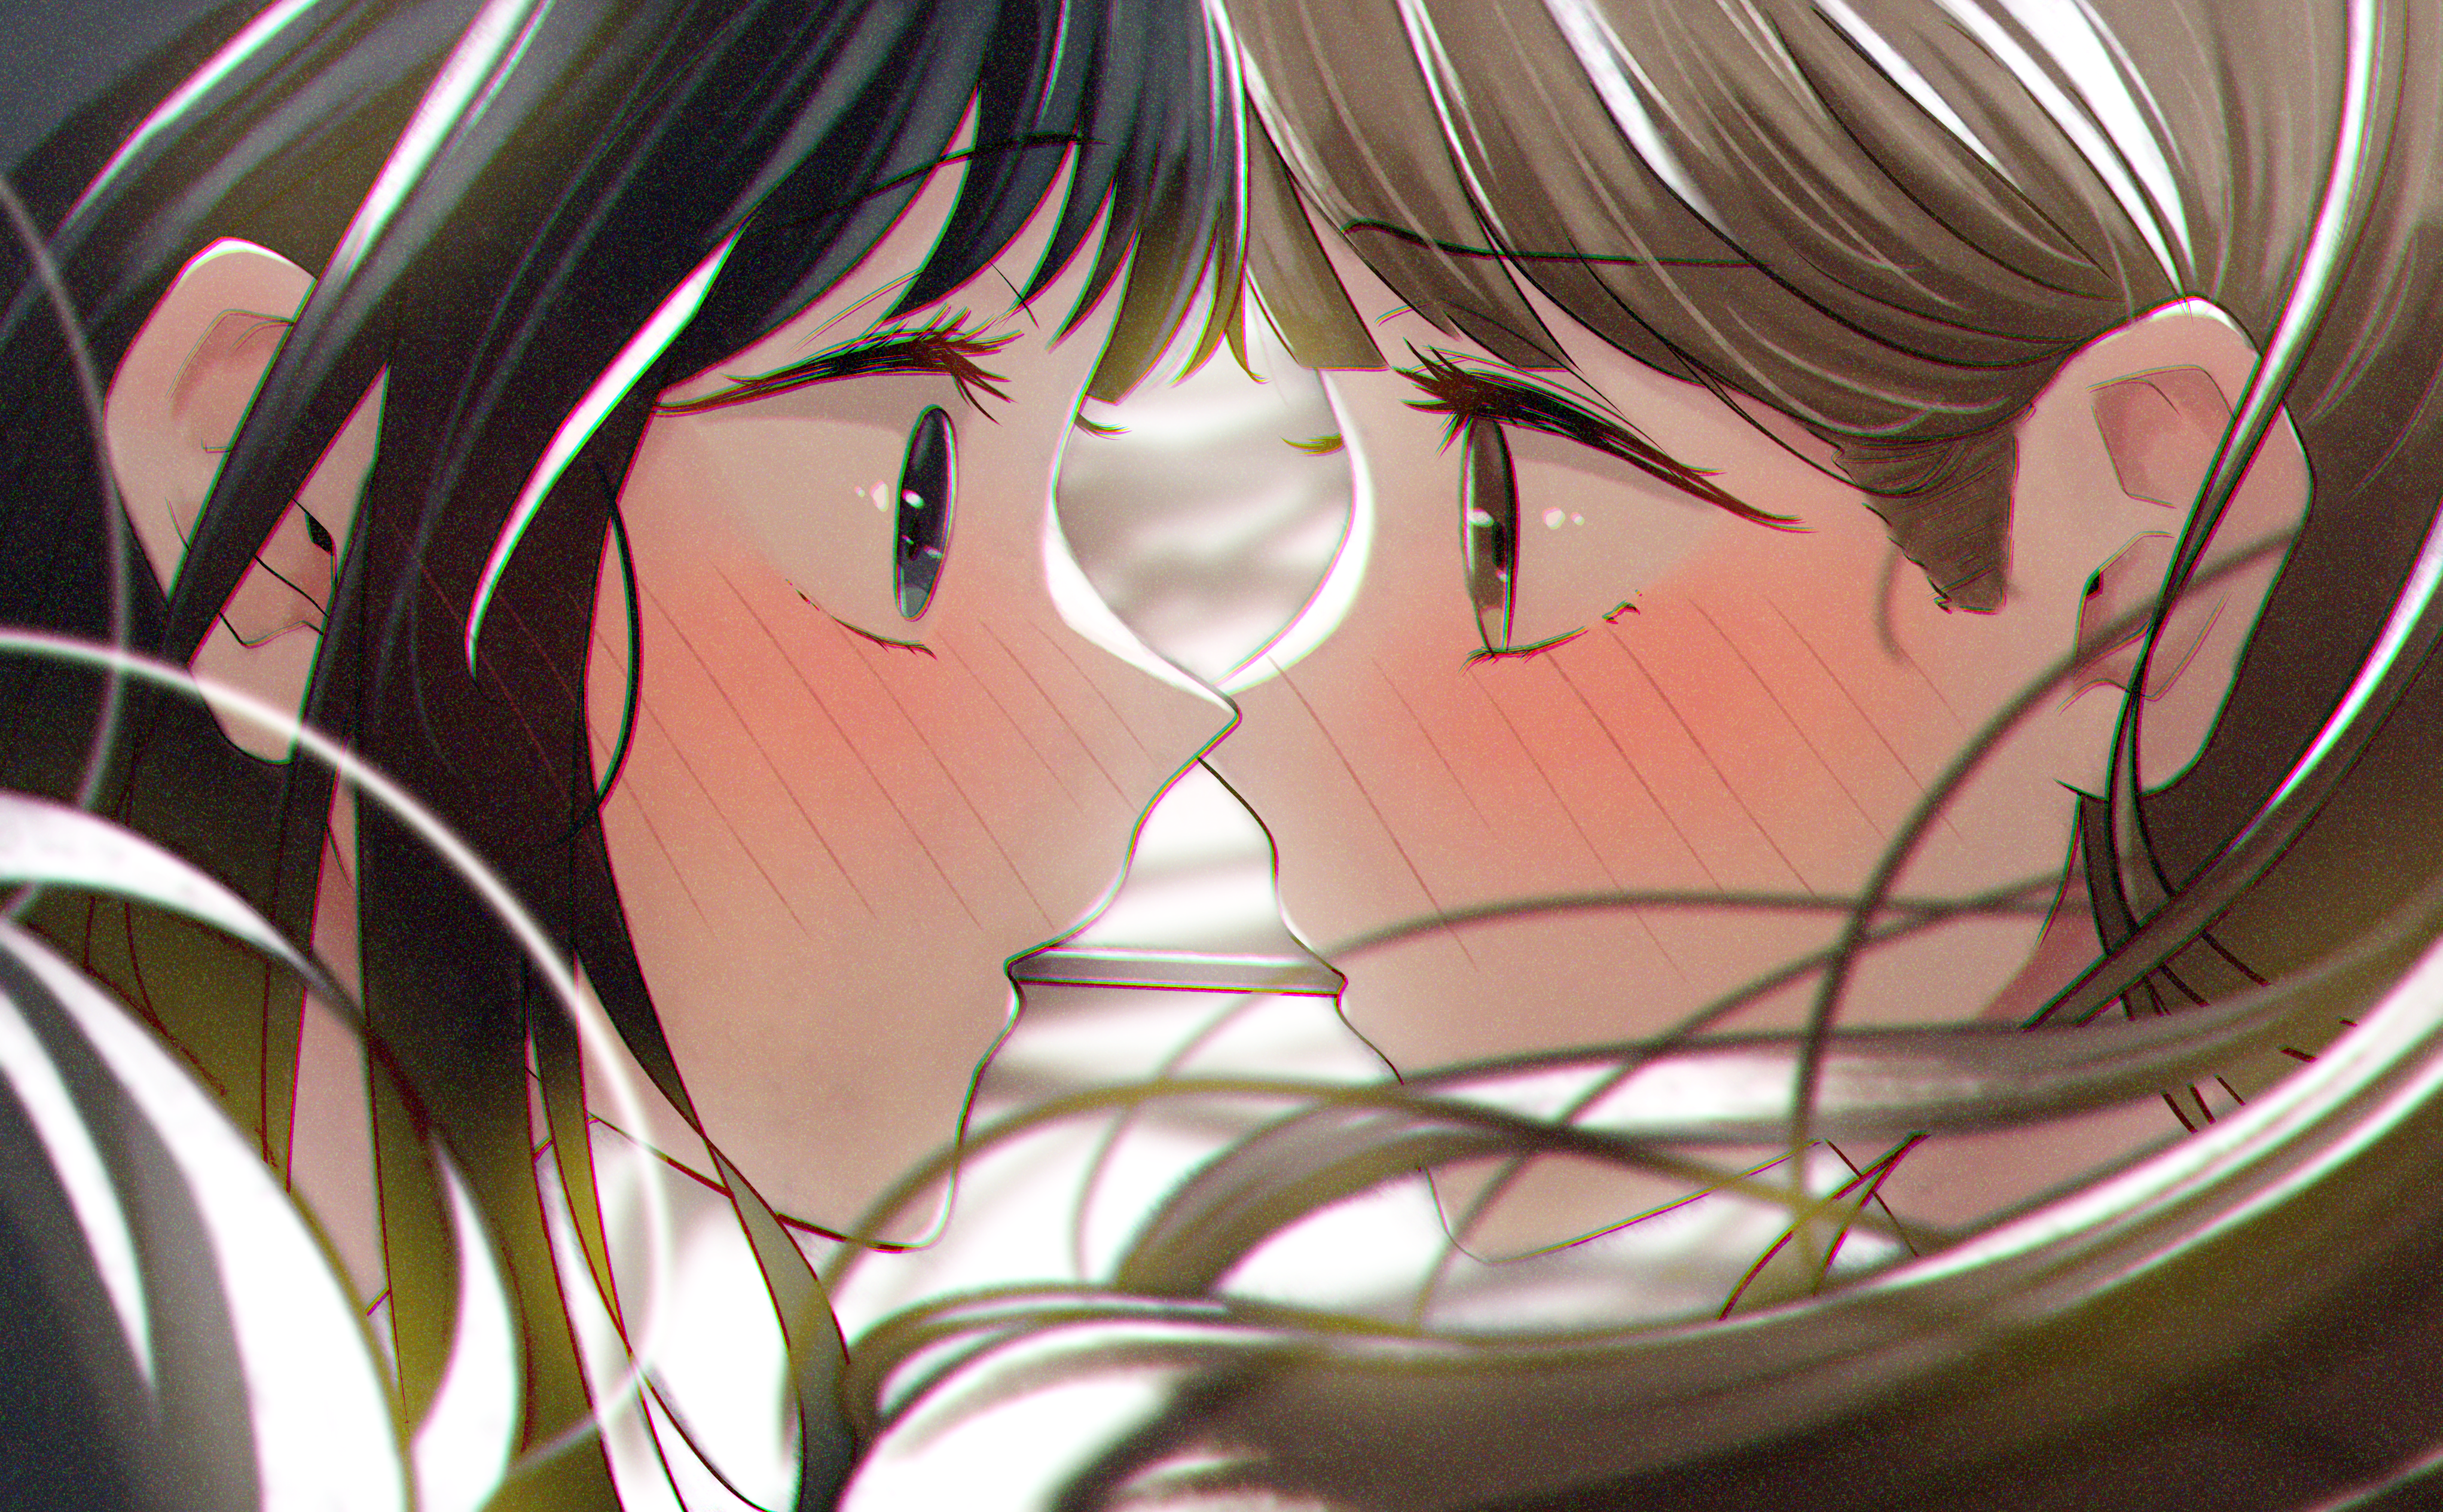 Anime 4086x2529 yuri blushing lesbians anime girls